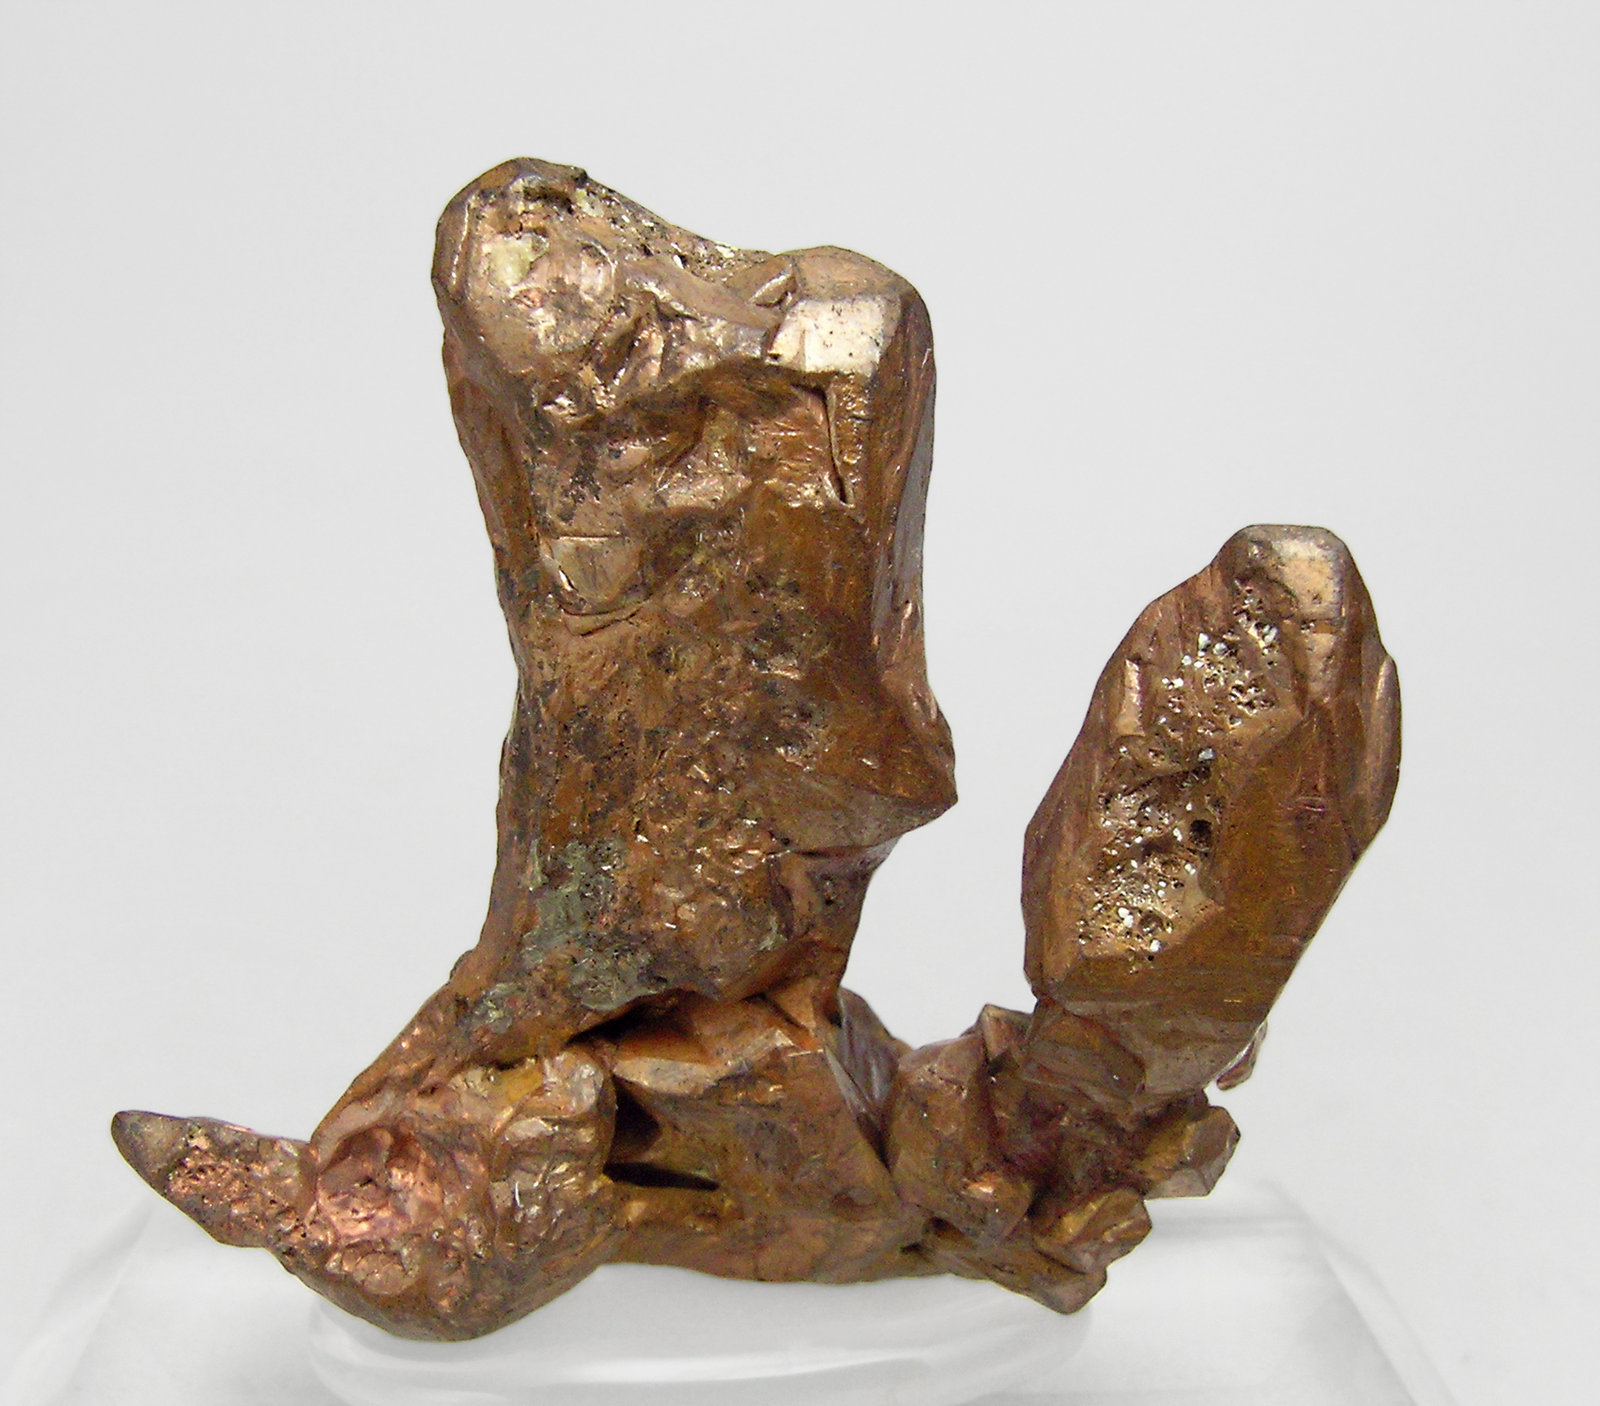 specimens/s_imagesQ1/Copper-MF70Q1r.jpg